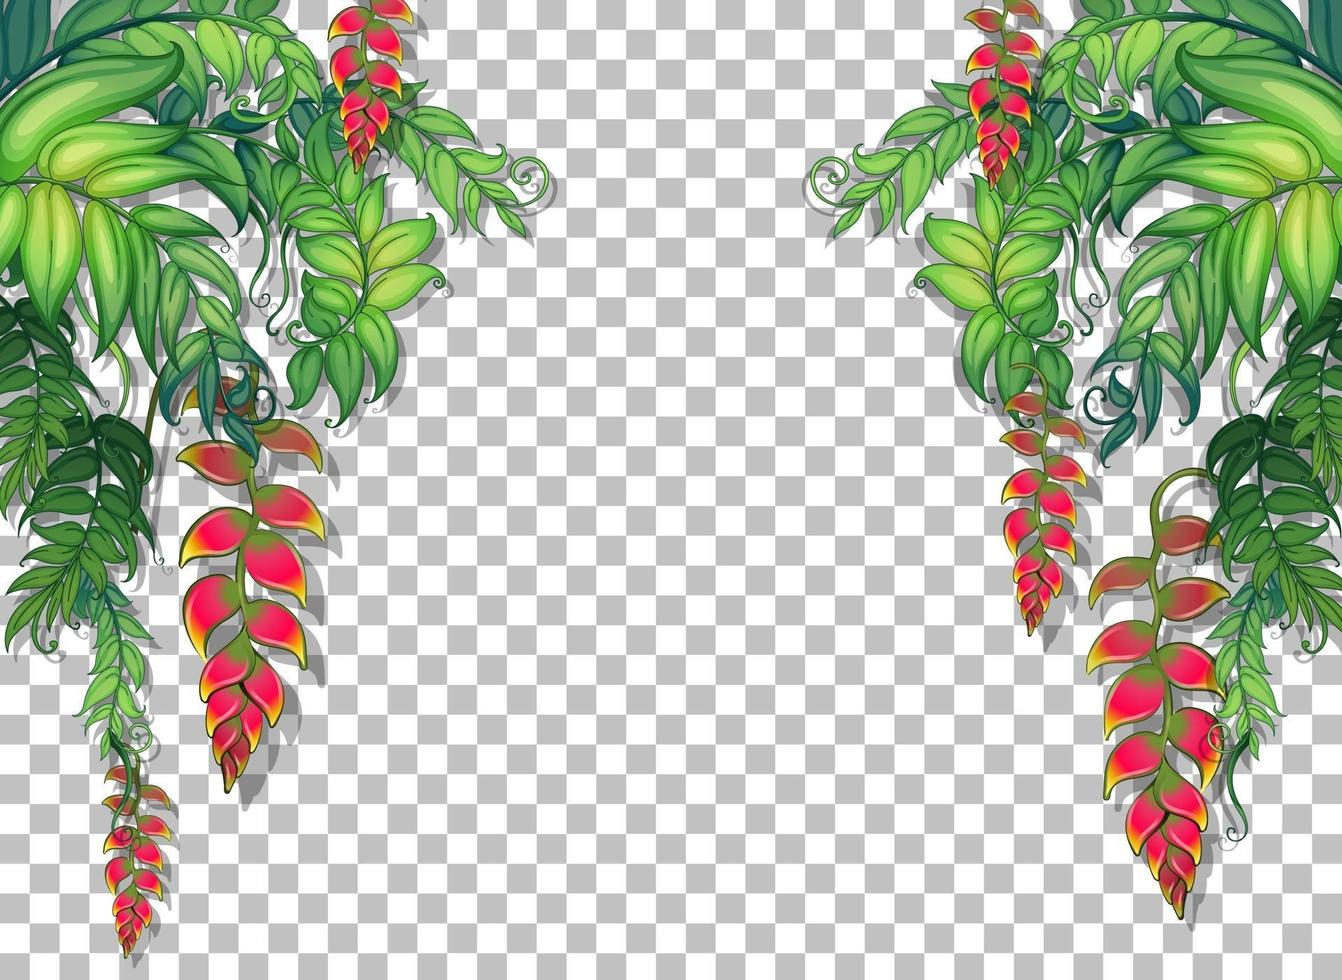 cornice di piante e foglie tropicali vettore